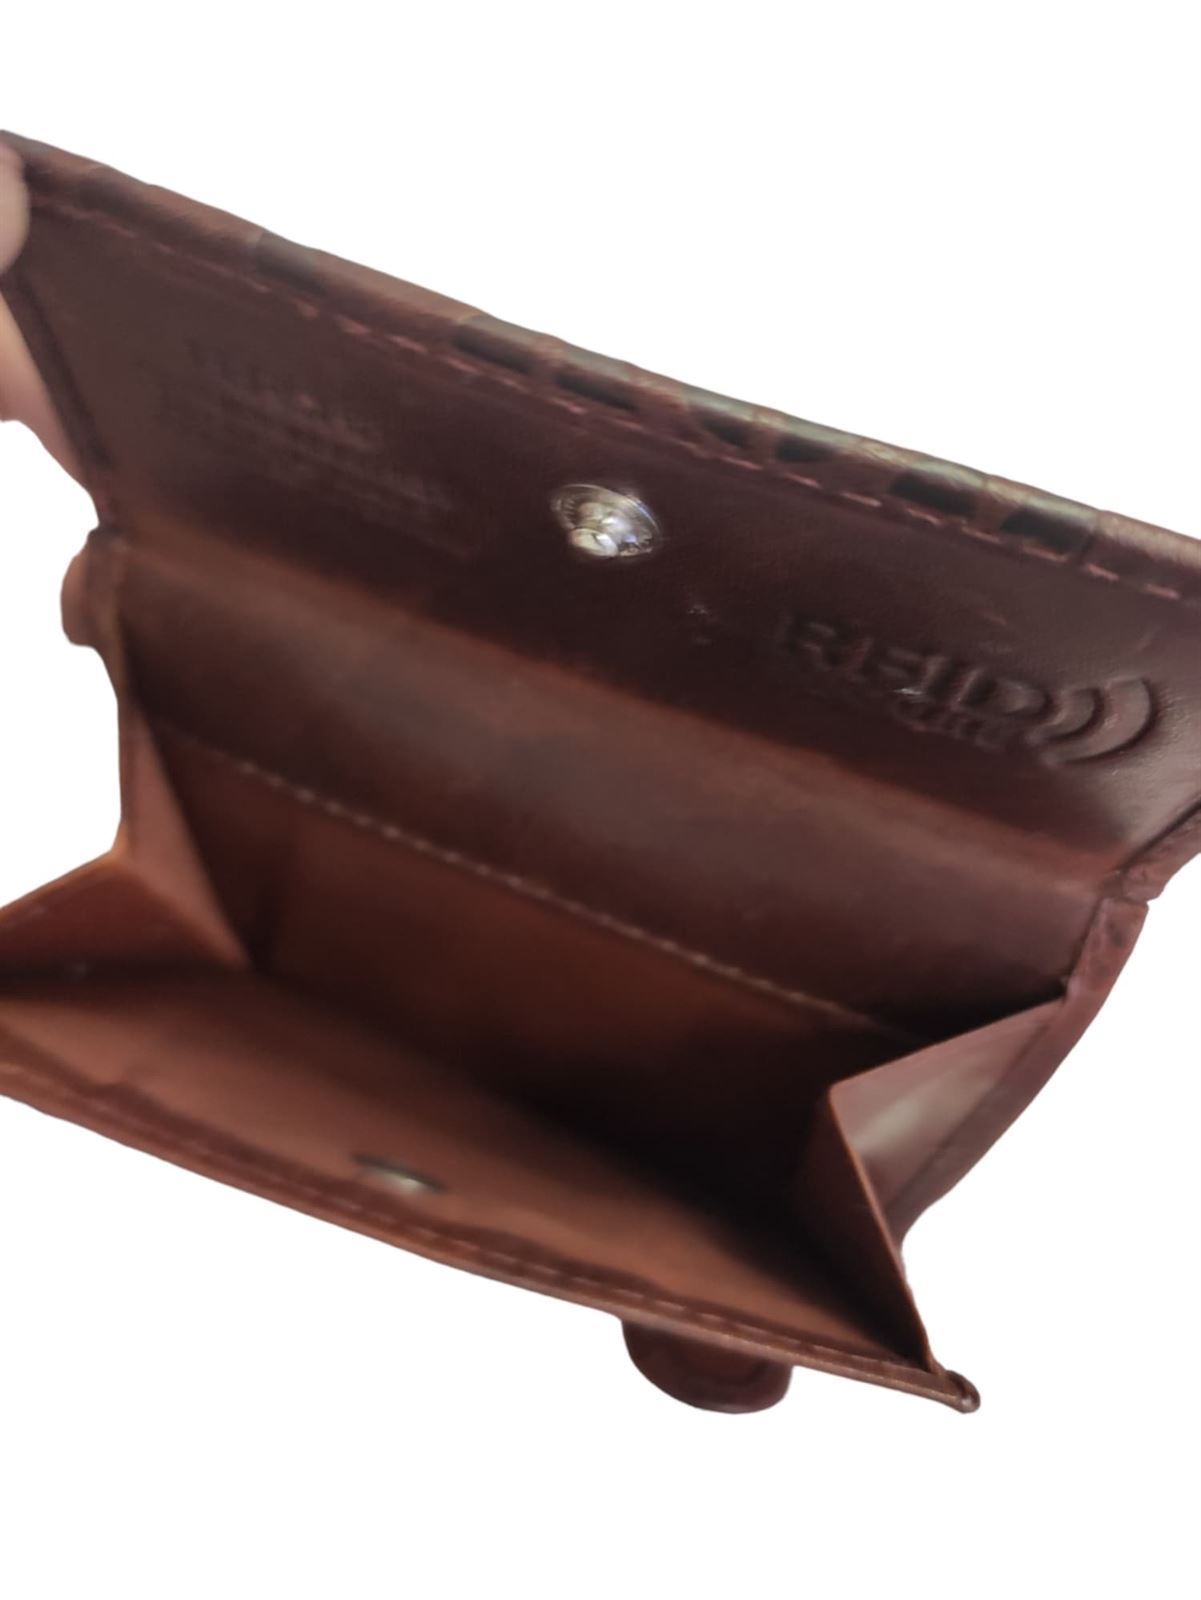 Billetera monedero pequeño en piel con protección RFID - Imagen 3